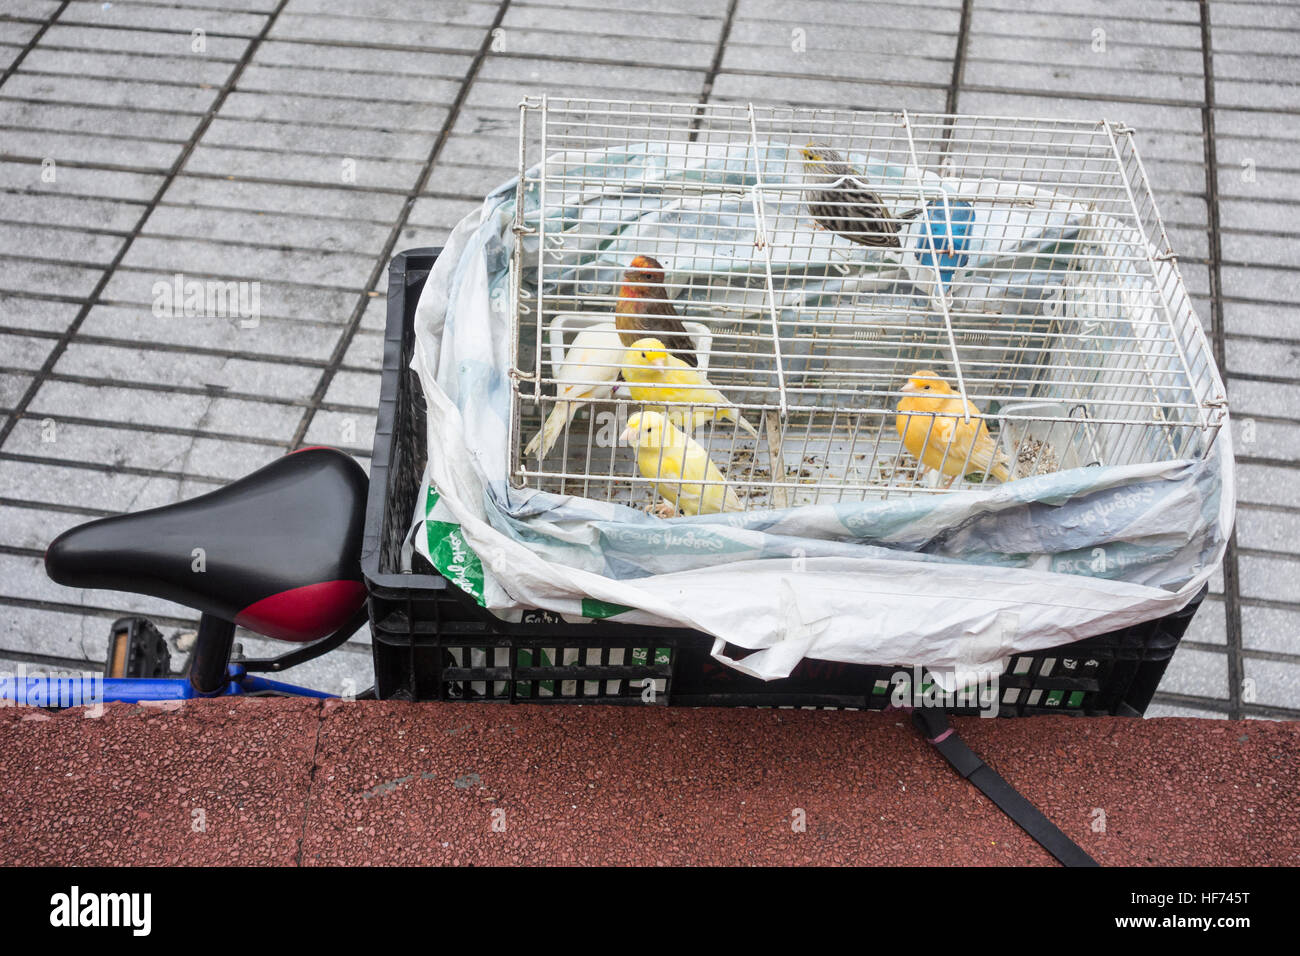 Mercado de aves en españa fotografías e imágenes de alta resolución - Alamy